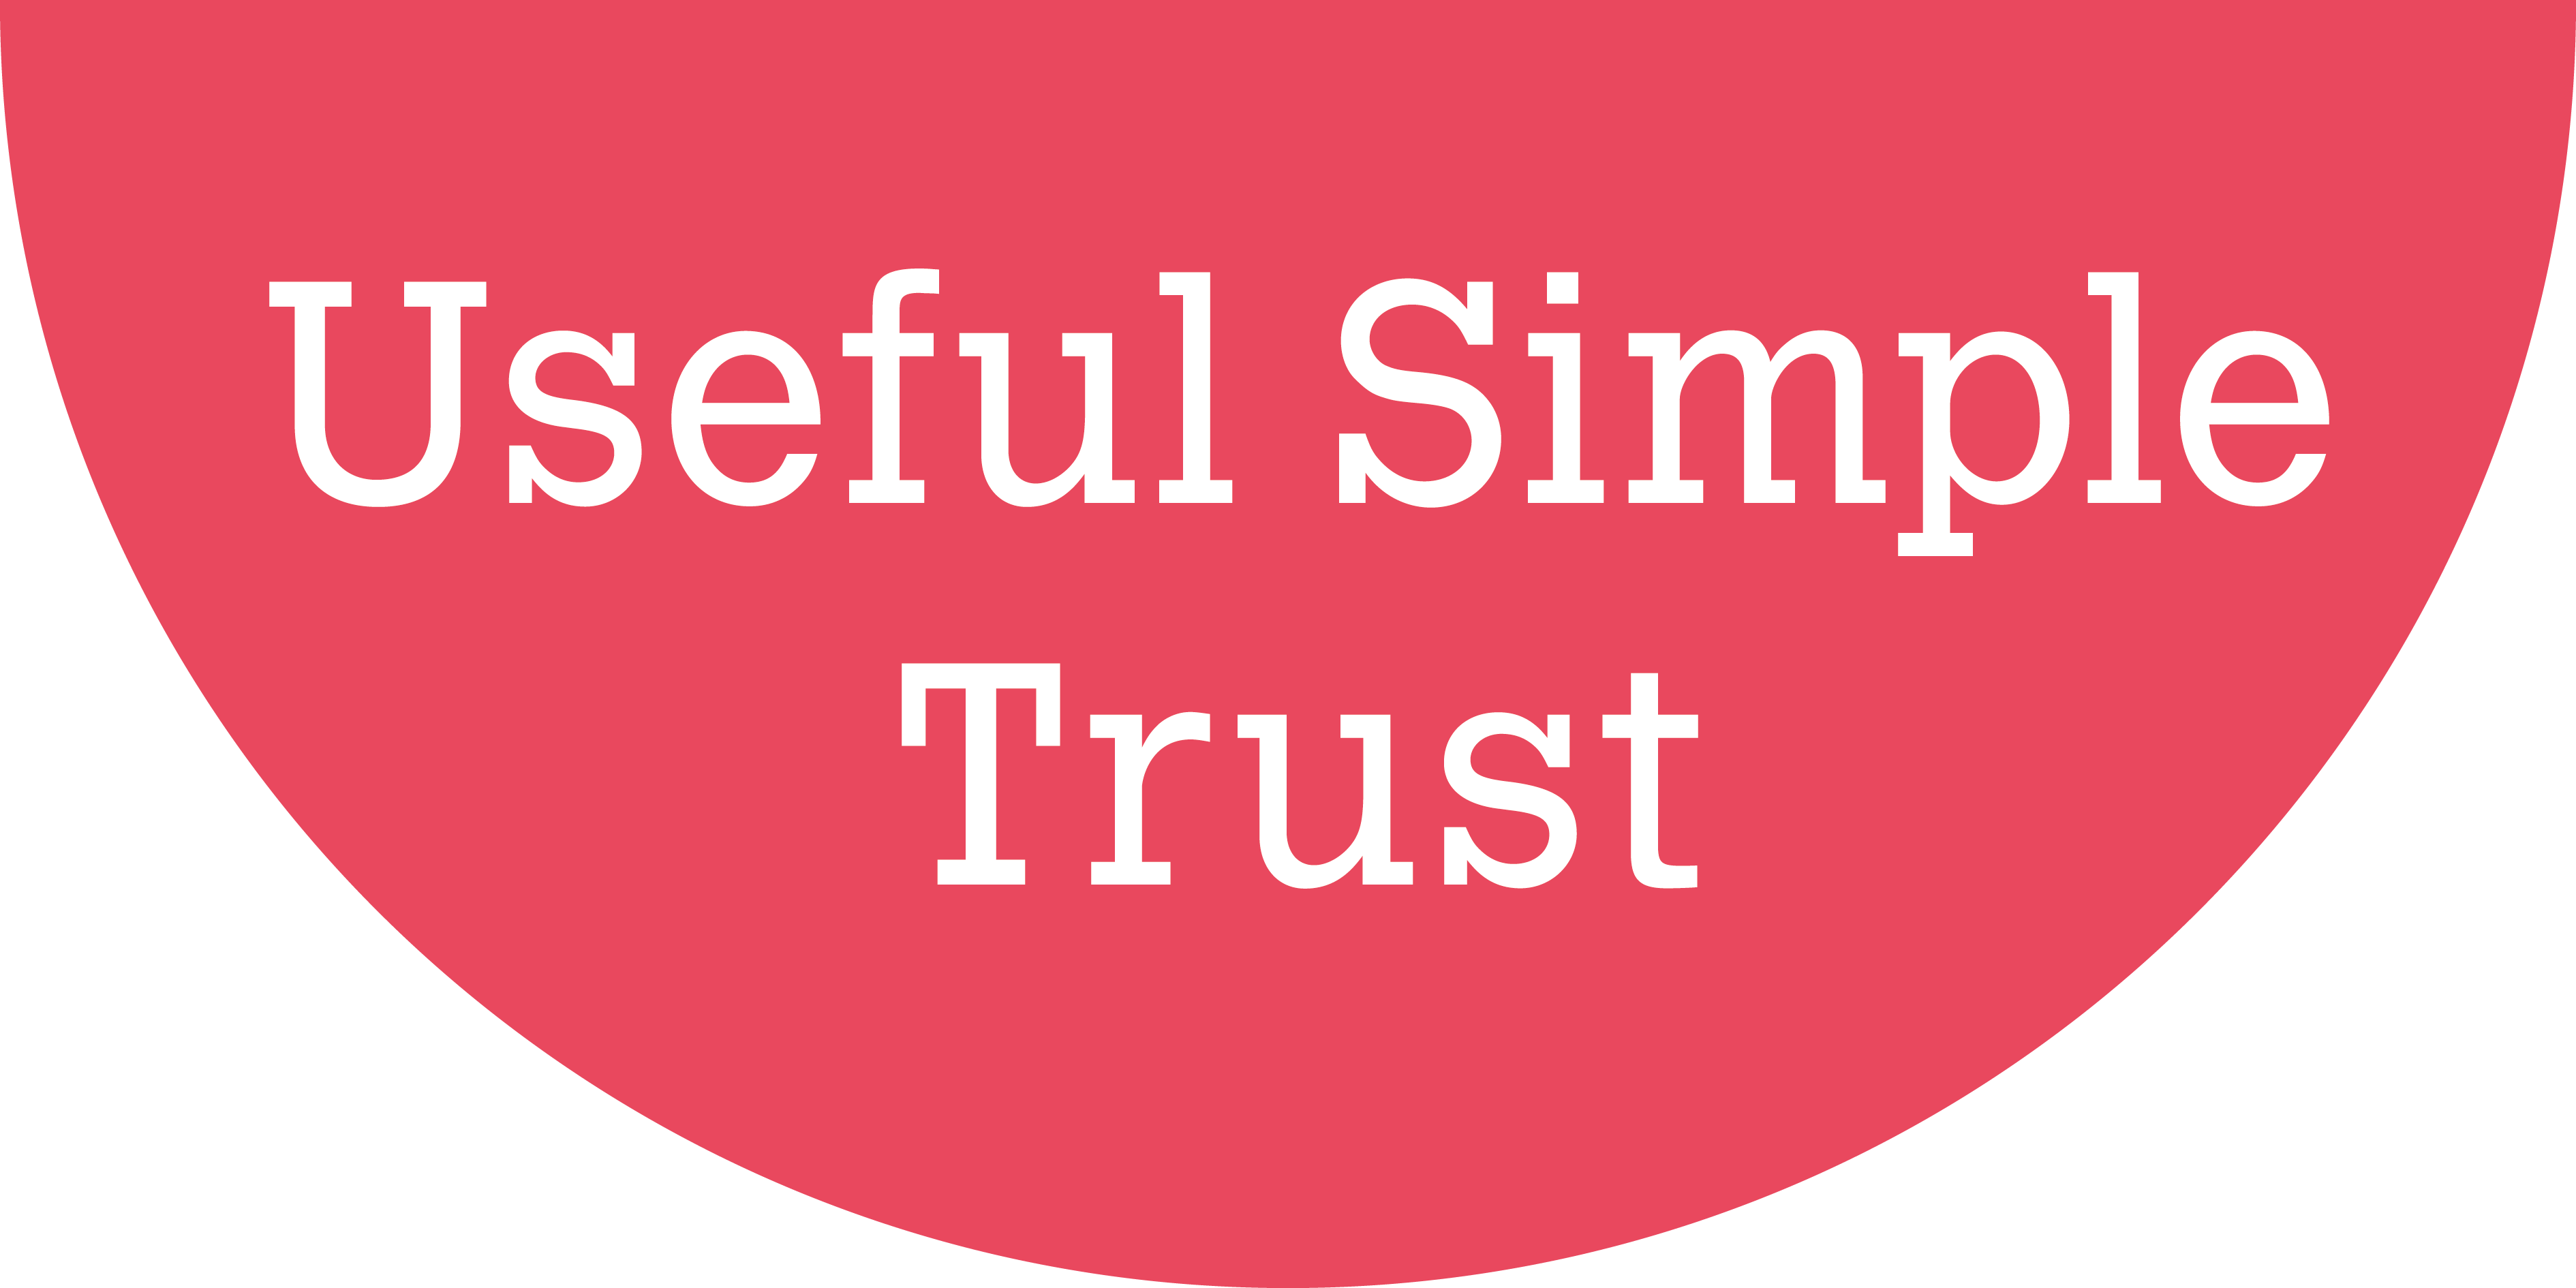 Useful Simple Trust